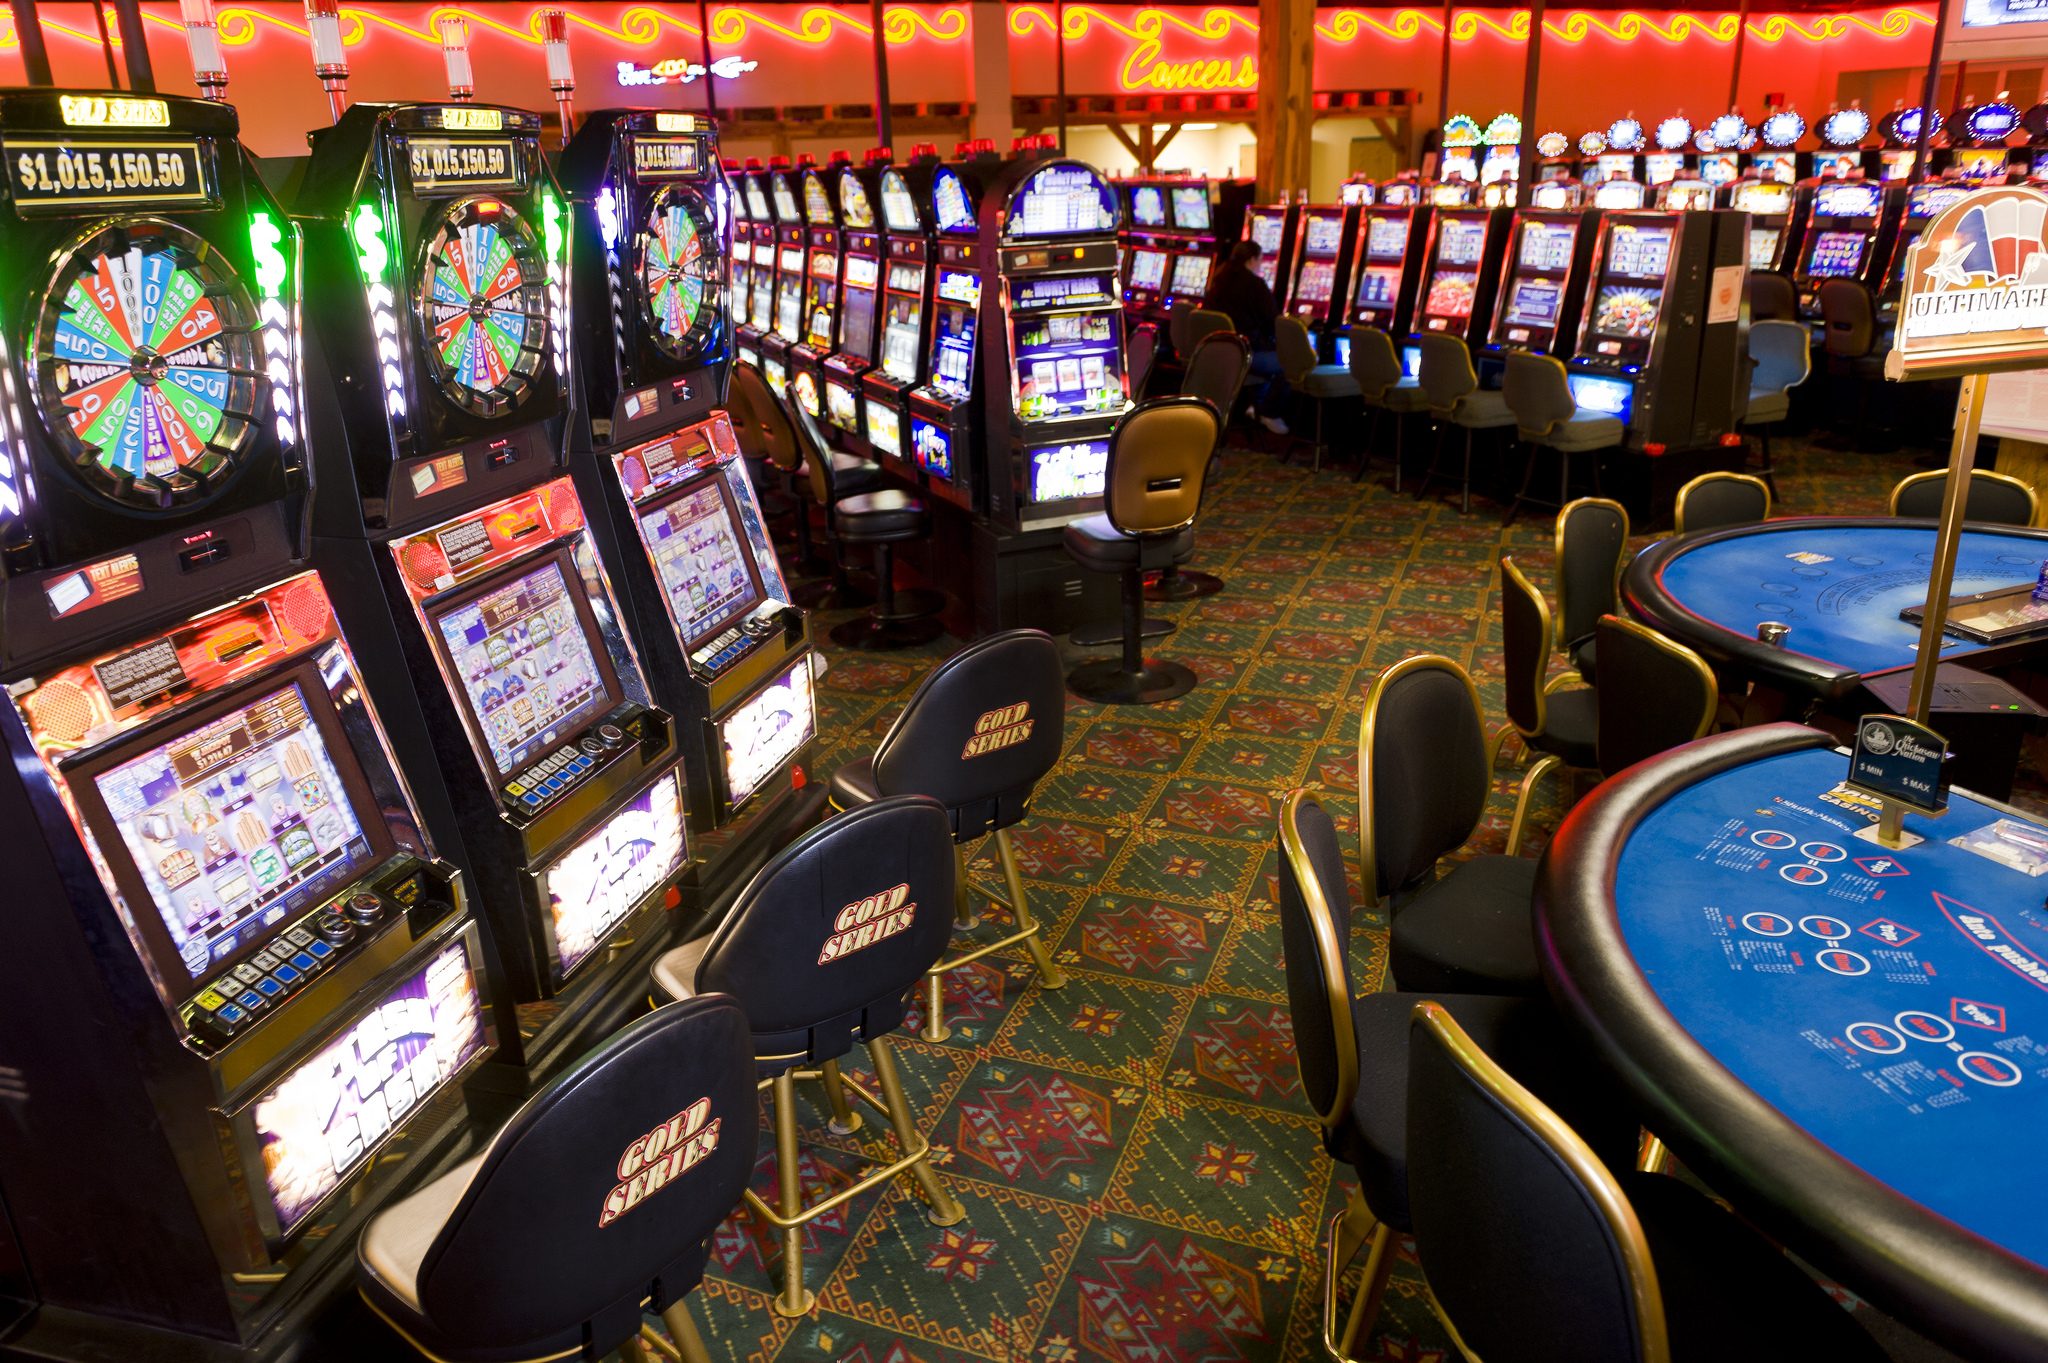 Des outils de classe mondiale facilitent le bouton-poussoir casinos